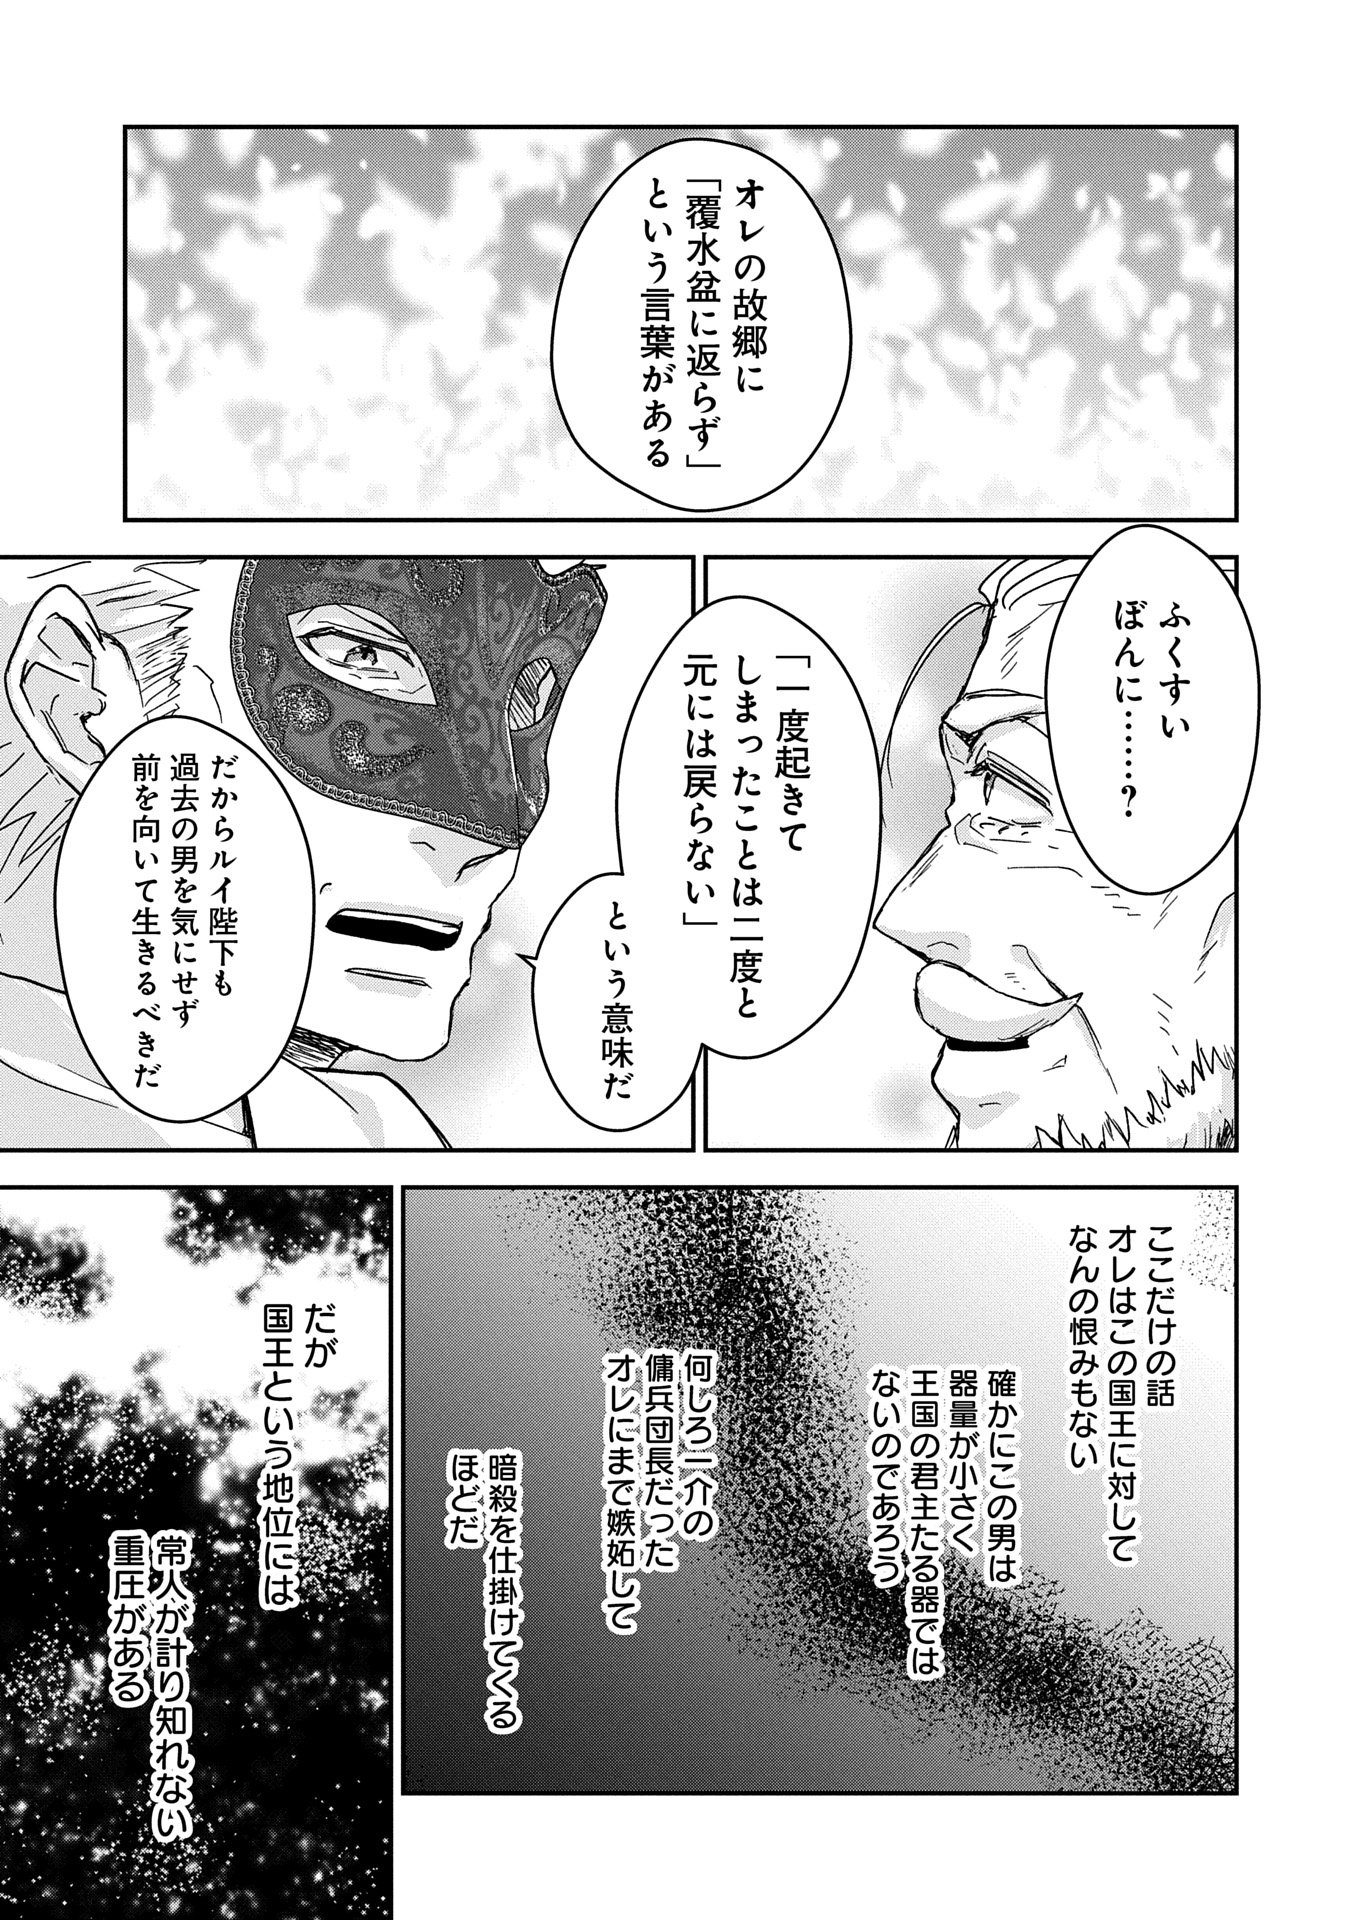 Senki to Yobareta Otoko, Puke ni Ansatsu Saretar Musume wo Hiroi, Issho ni Slow Life wo Hajimeru - Chapter 28.2 - Page 17